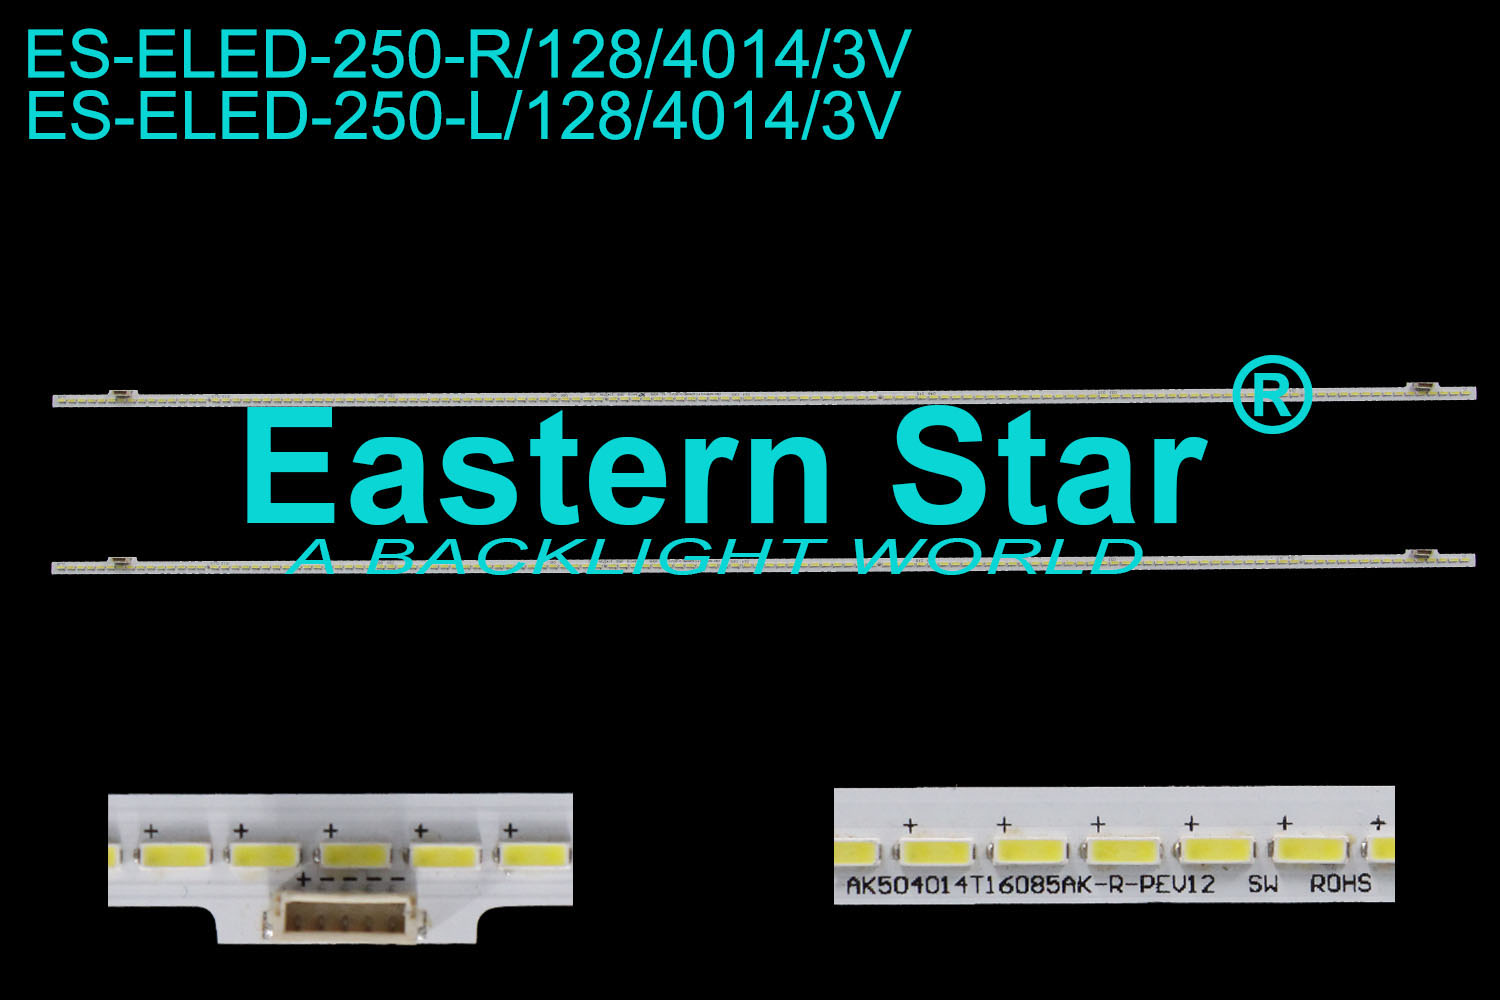 ES-ELED-250 ELED/EDGE TV backlight 50'' 128LEDs use for AK504014T16085AK-R/L-REV12 LED STRIPS(2)